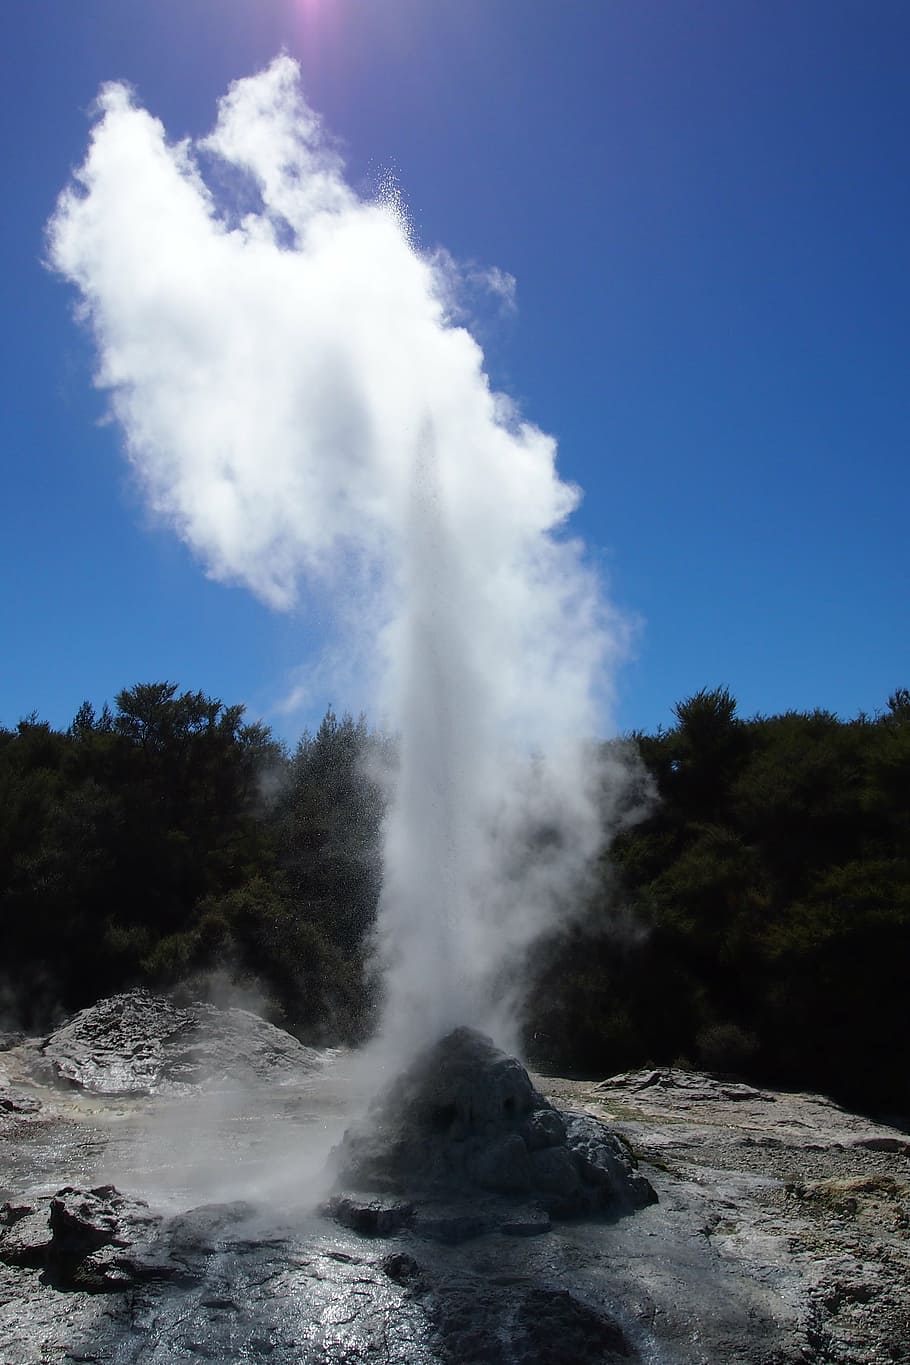 rotorua, geyser, selandia baru, deterjen, sumber panas, pulau utara, daerah gunung berapi, vulkanisme, alam, uap